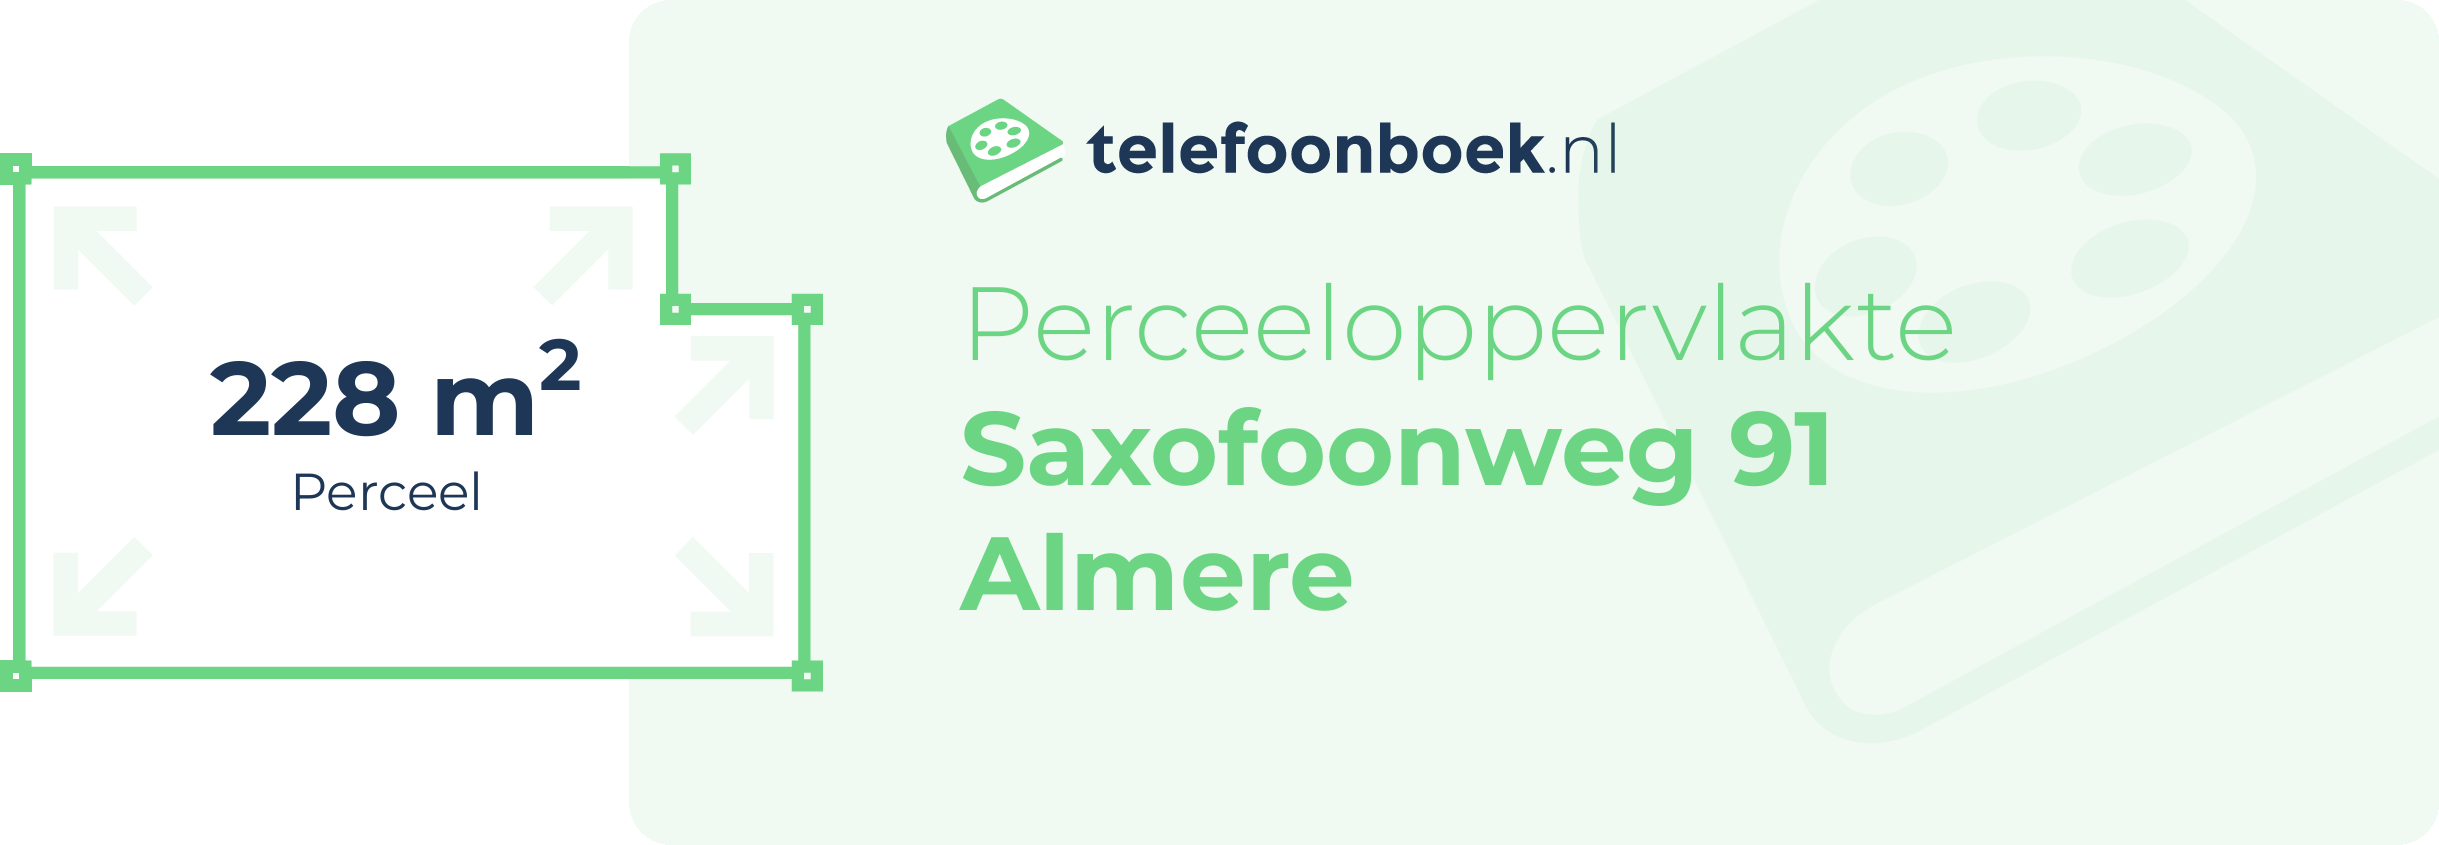 Perceeloppervlakte Saxofoonweg 91 Almere